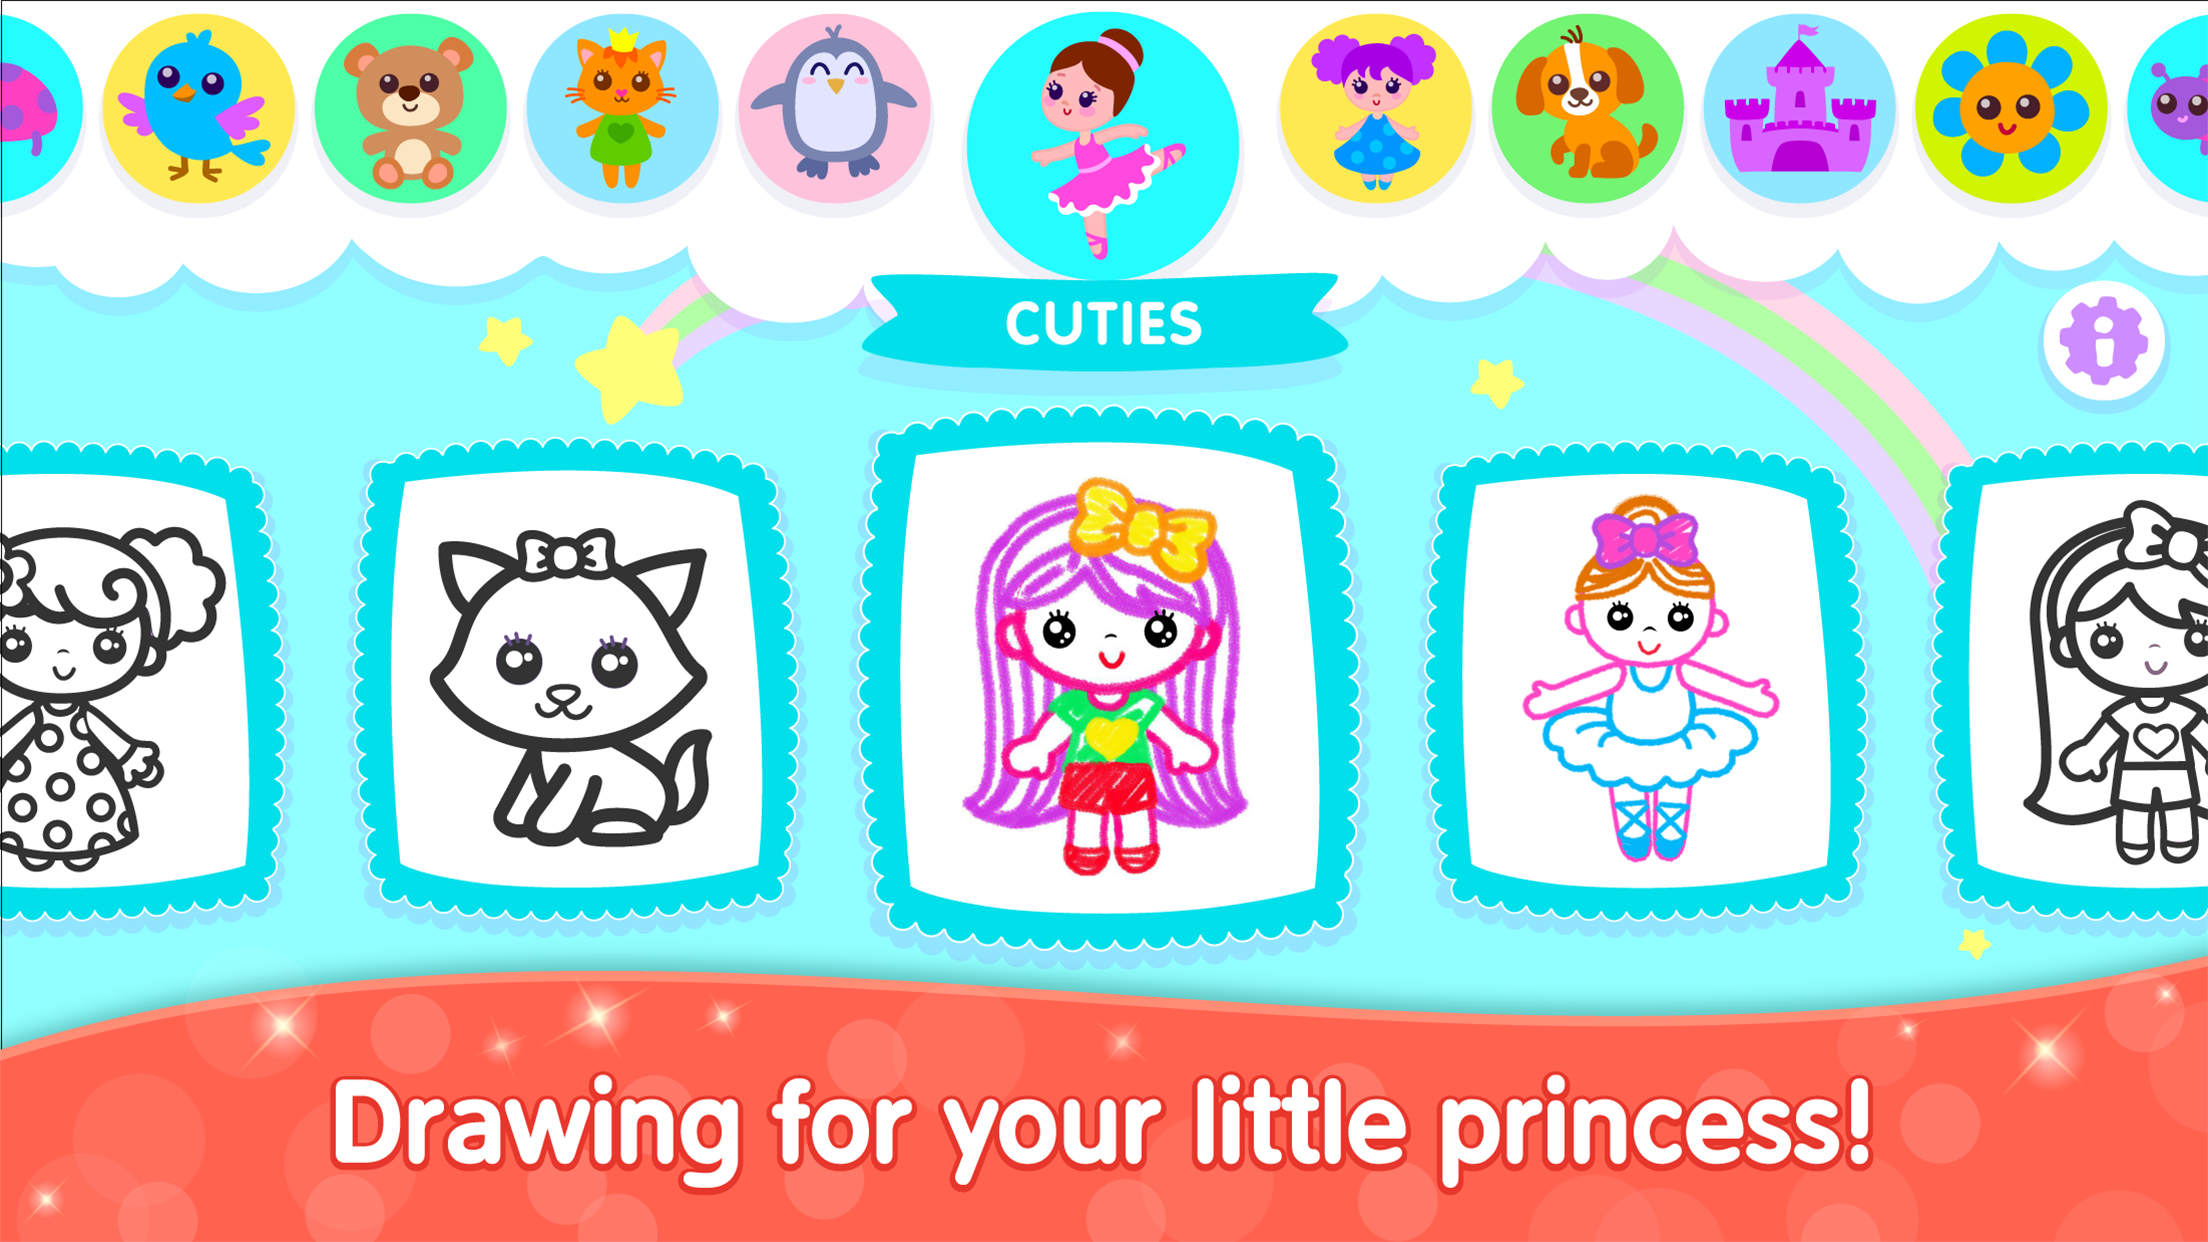 Screenshot 1 of Ứng dụng vẽ trò chơi Bini cho trẻ em 2.9.0